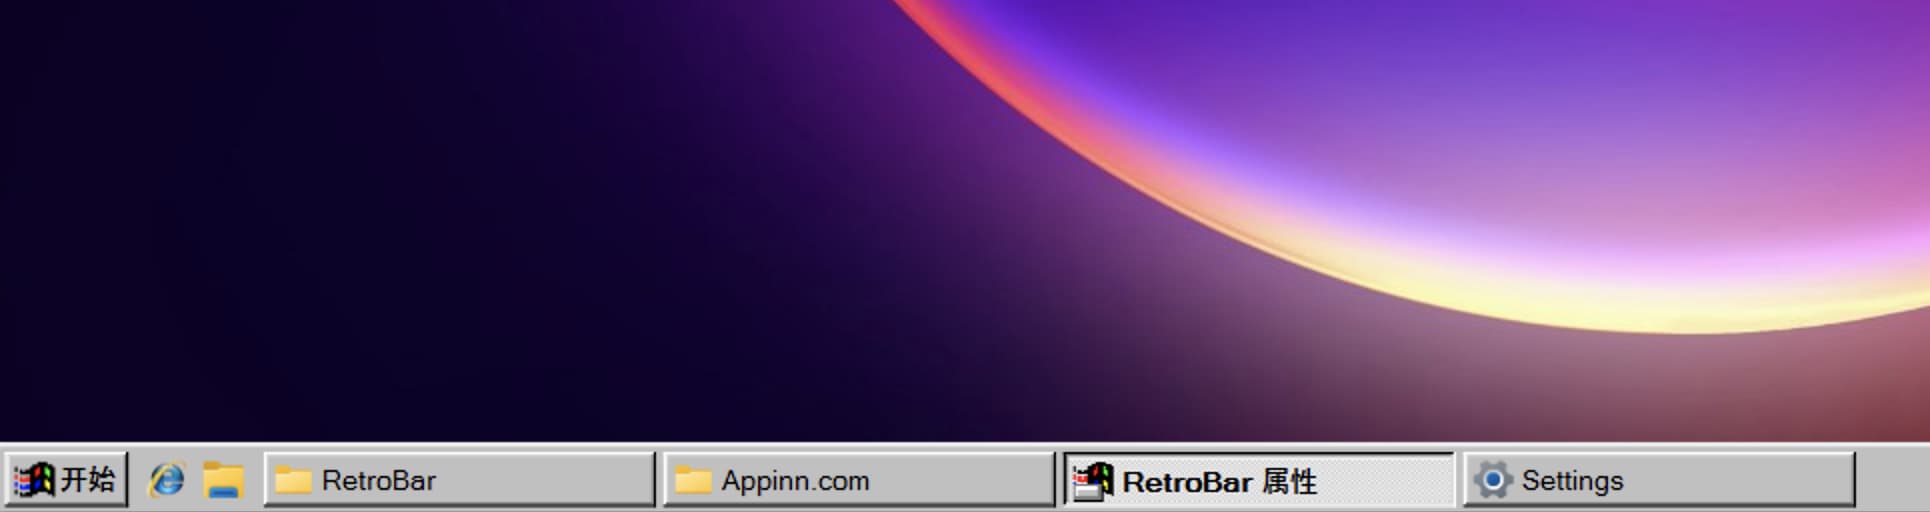 RetroBar - 回到经典 Windows 95、98、Me、2000 或 XP 风格的 Windows 任务栏 3